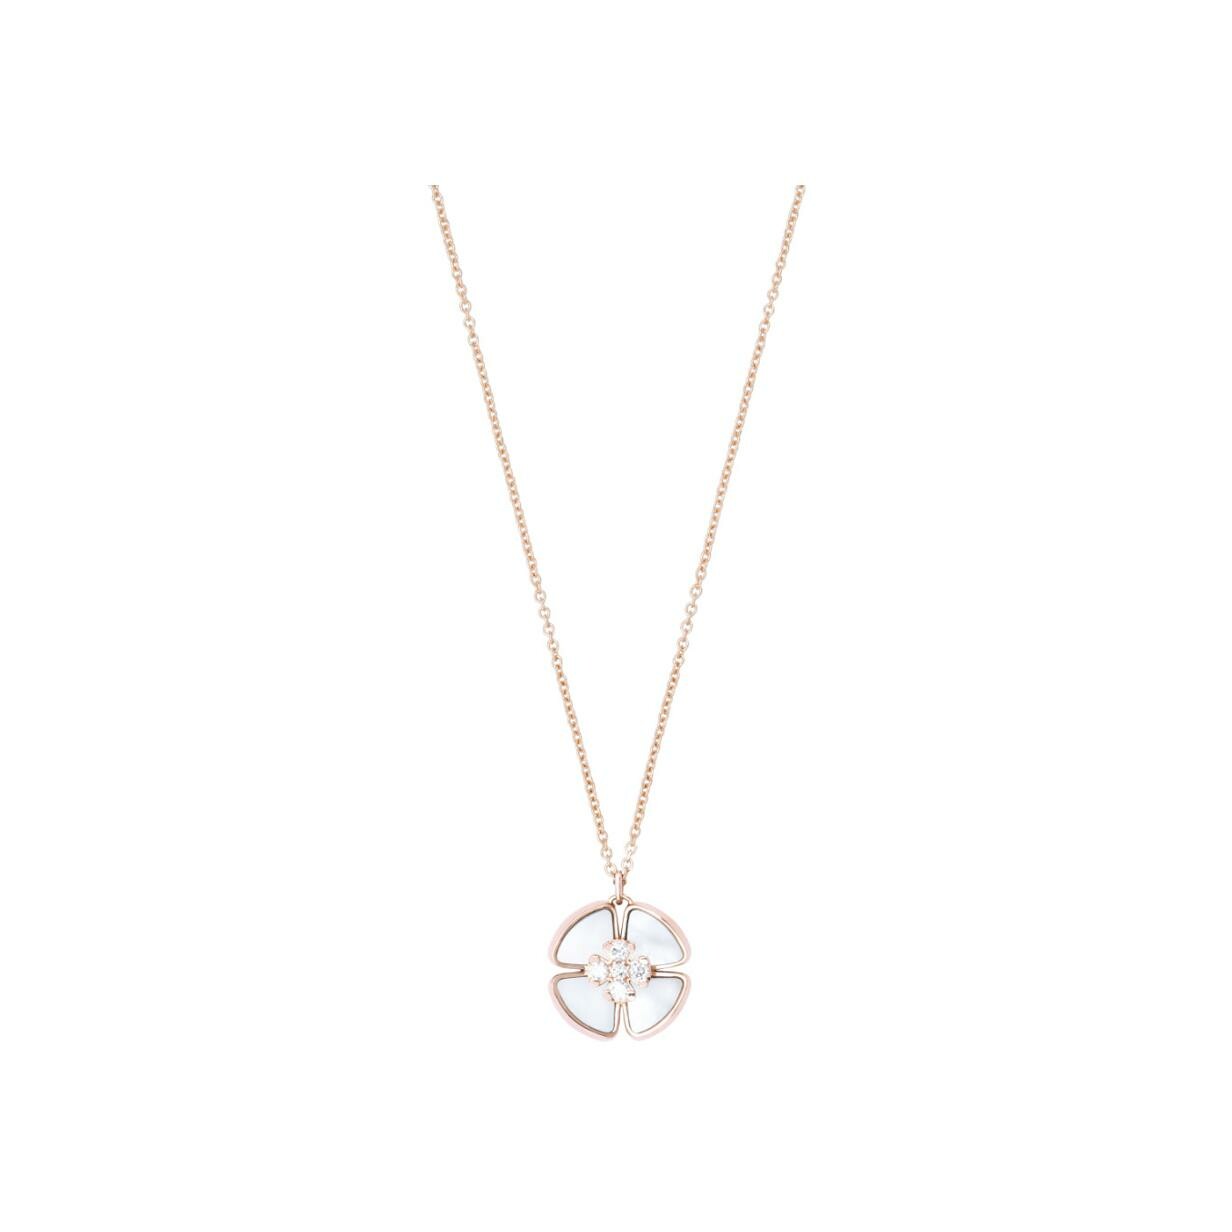 Collier pendentif Louis Vuitton Blossom, or rose et diamants